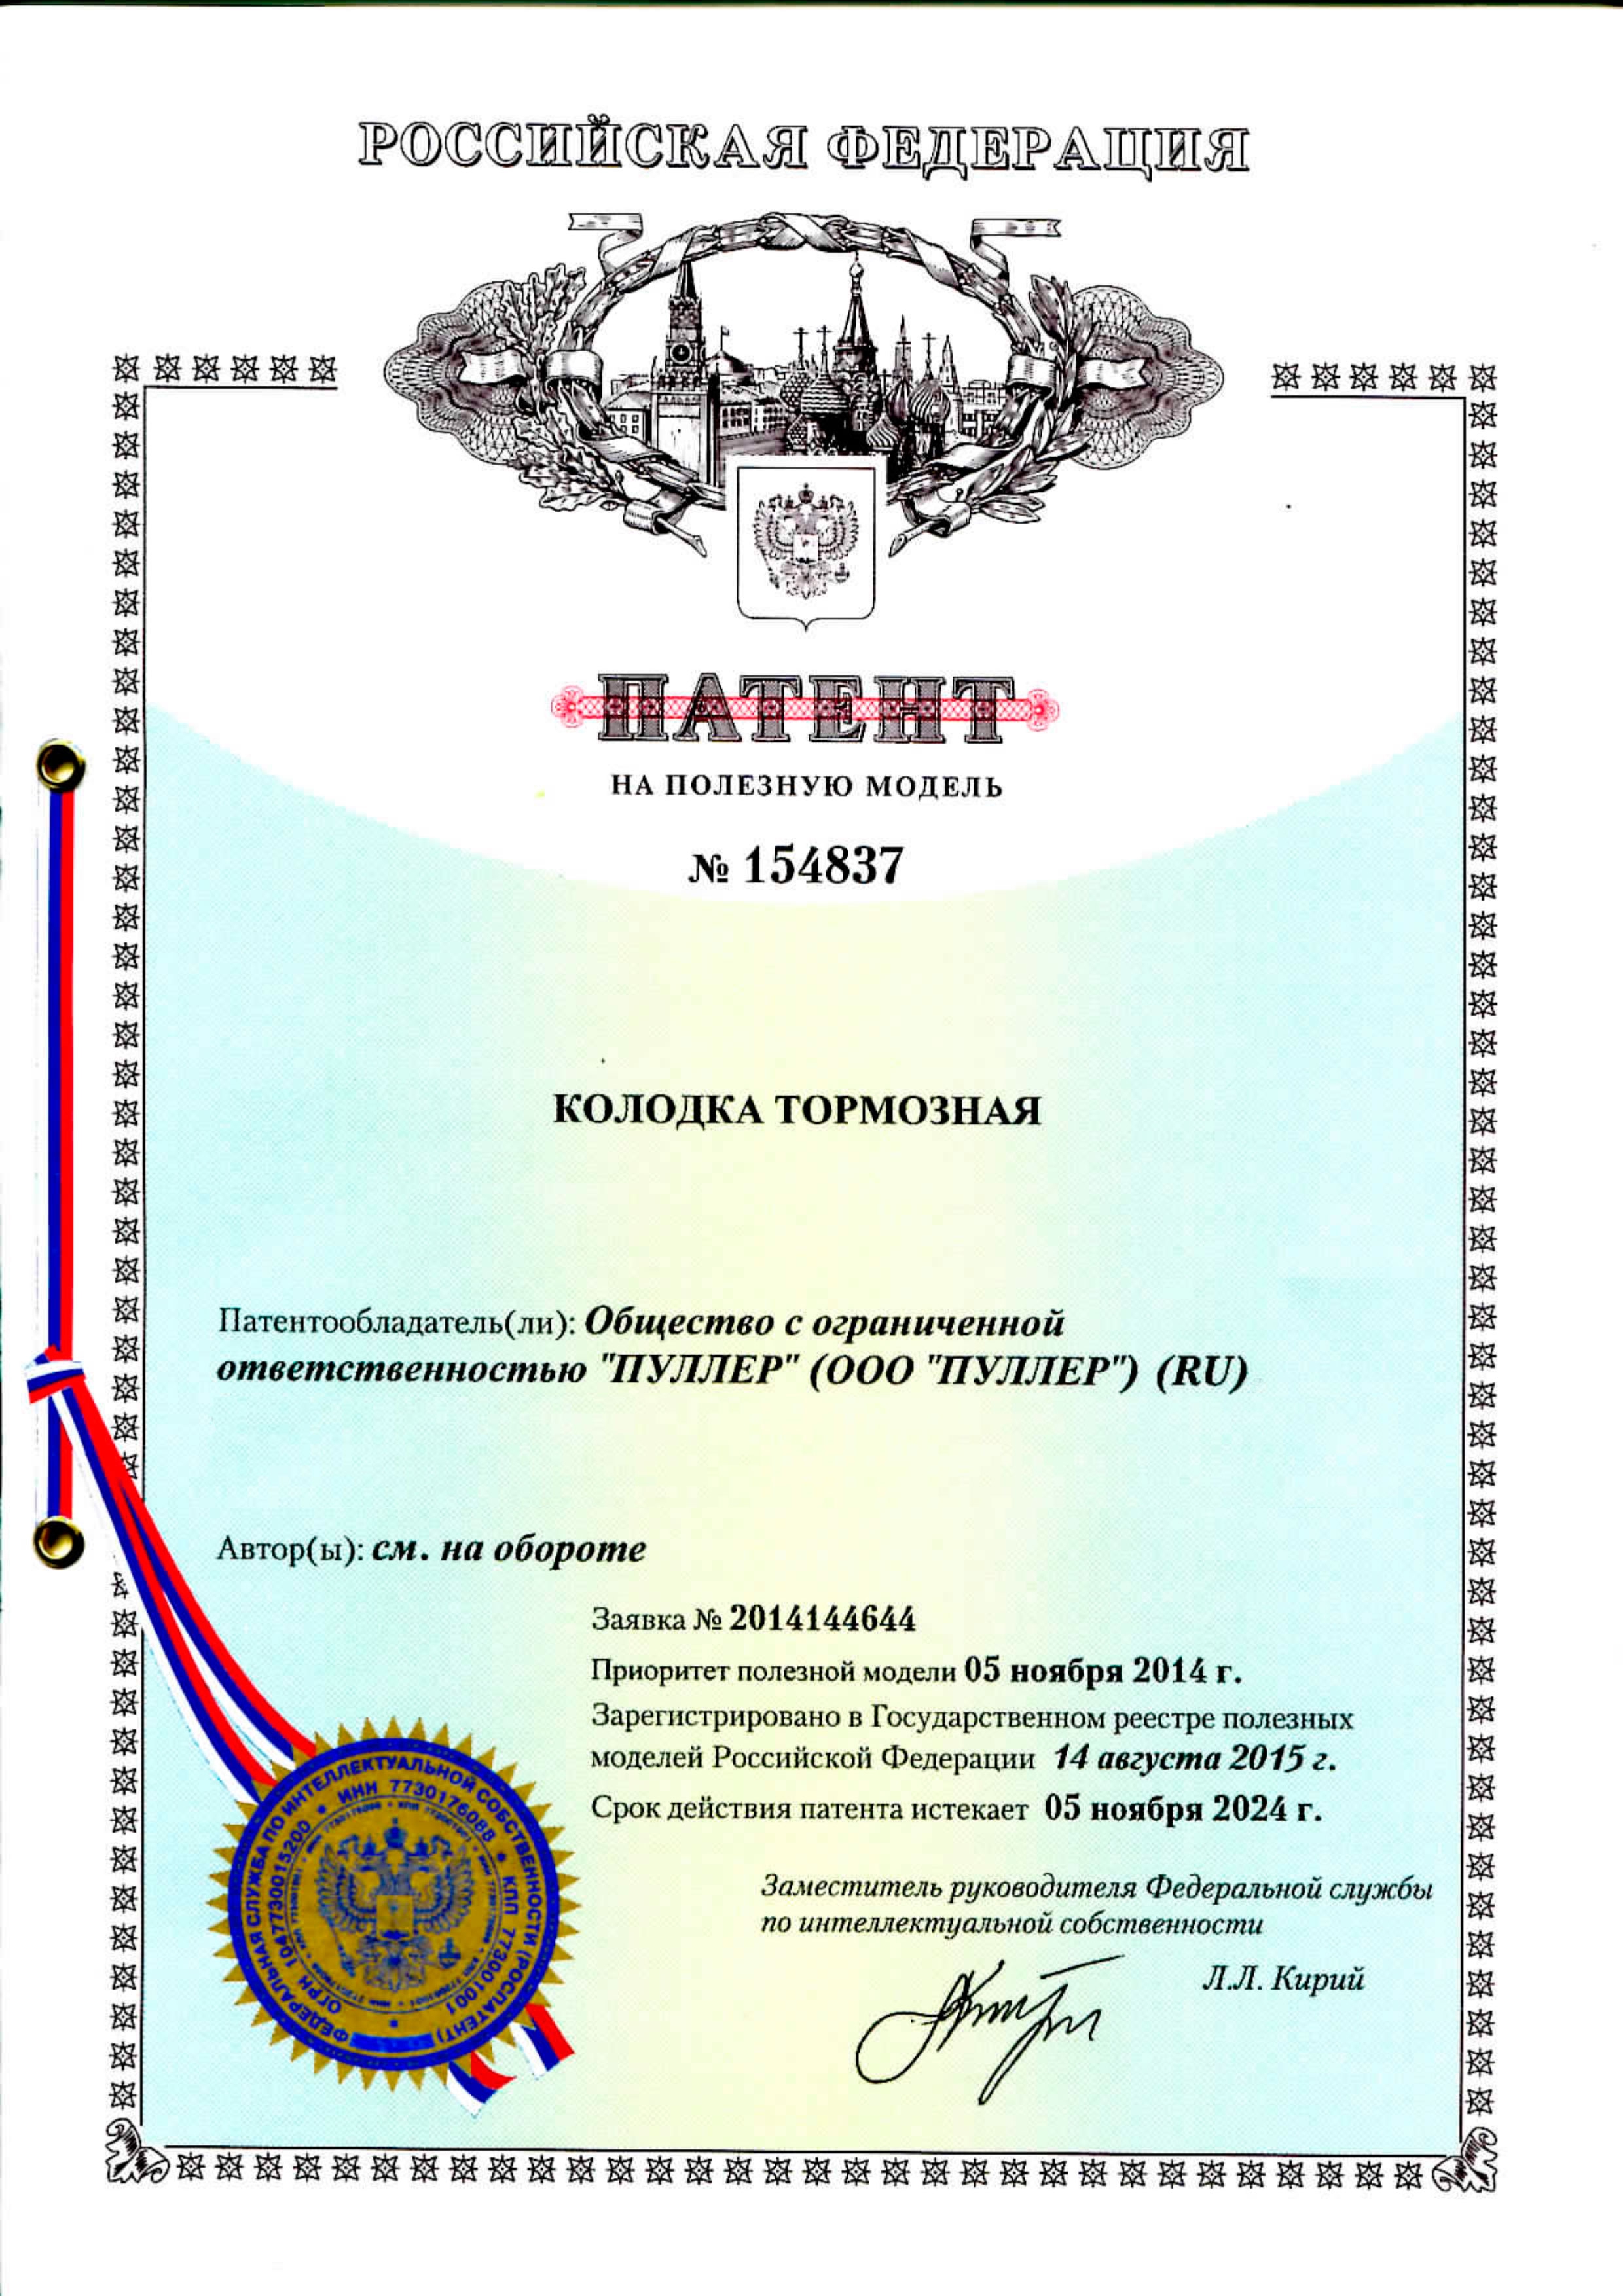 сертификат пуллер